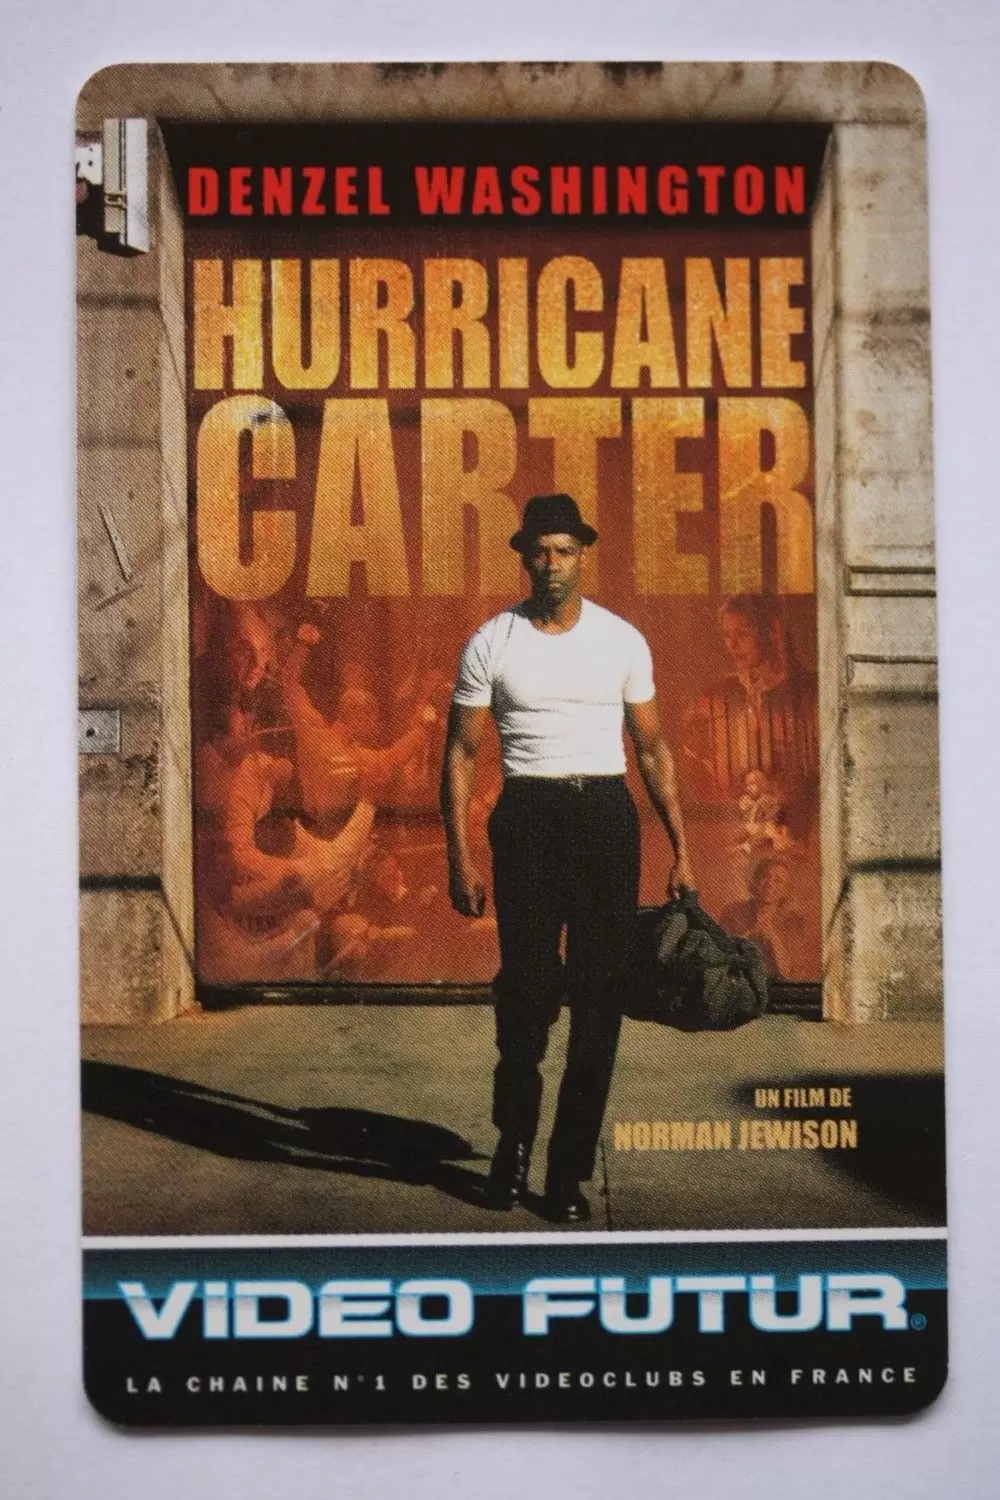 Cartes Vidéo Futur - Hurricane carter